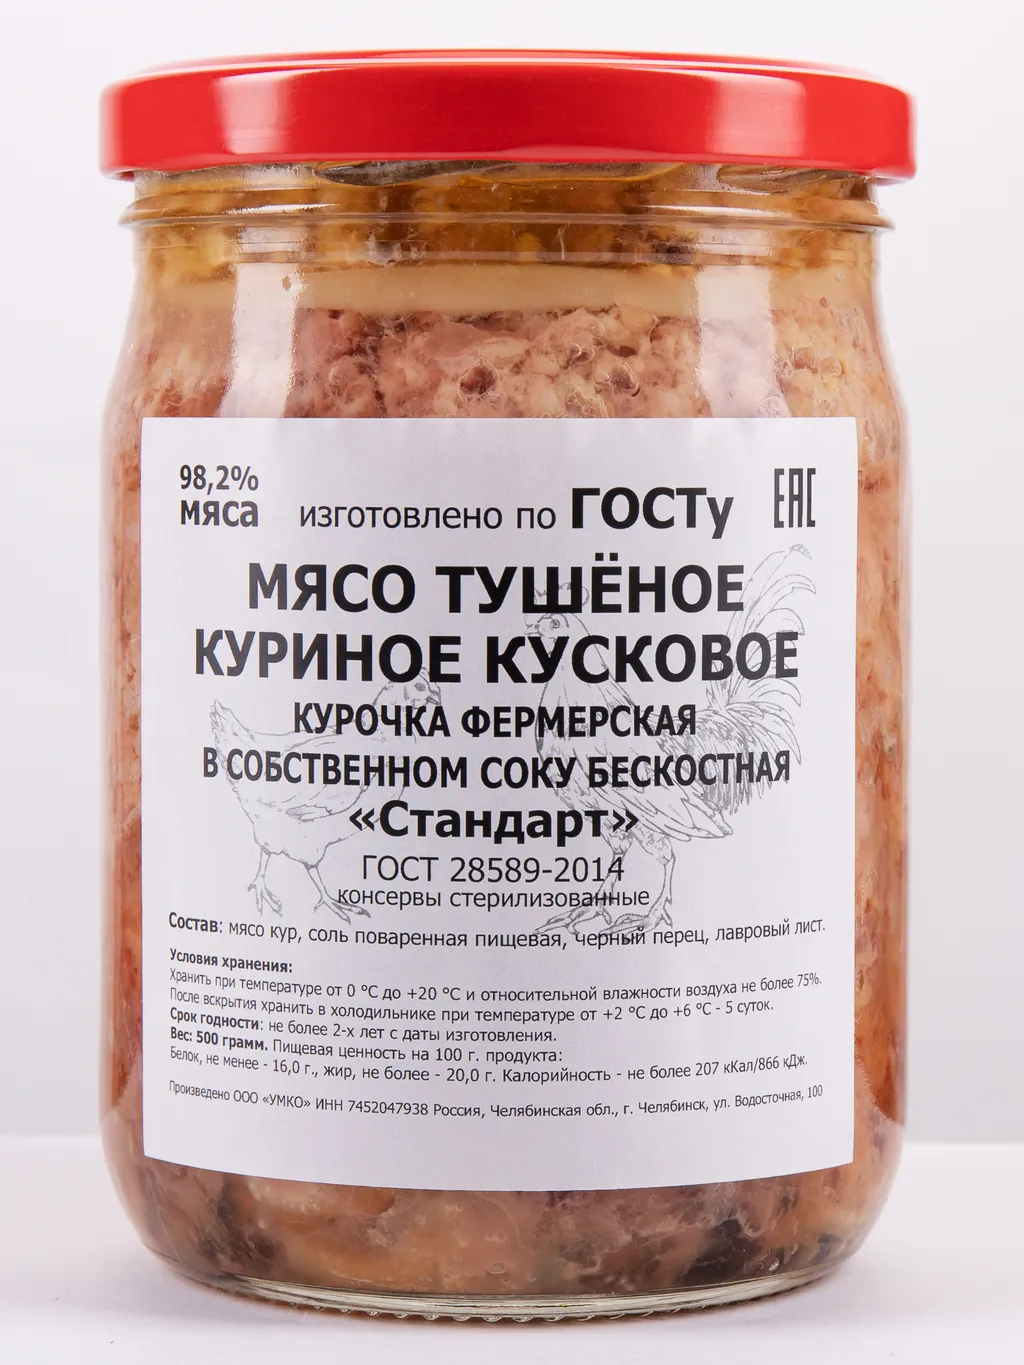 мясо куриное в собственном соку (Филе) в Челябинске и Челябинской области 8